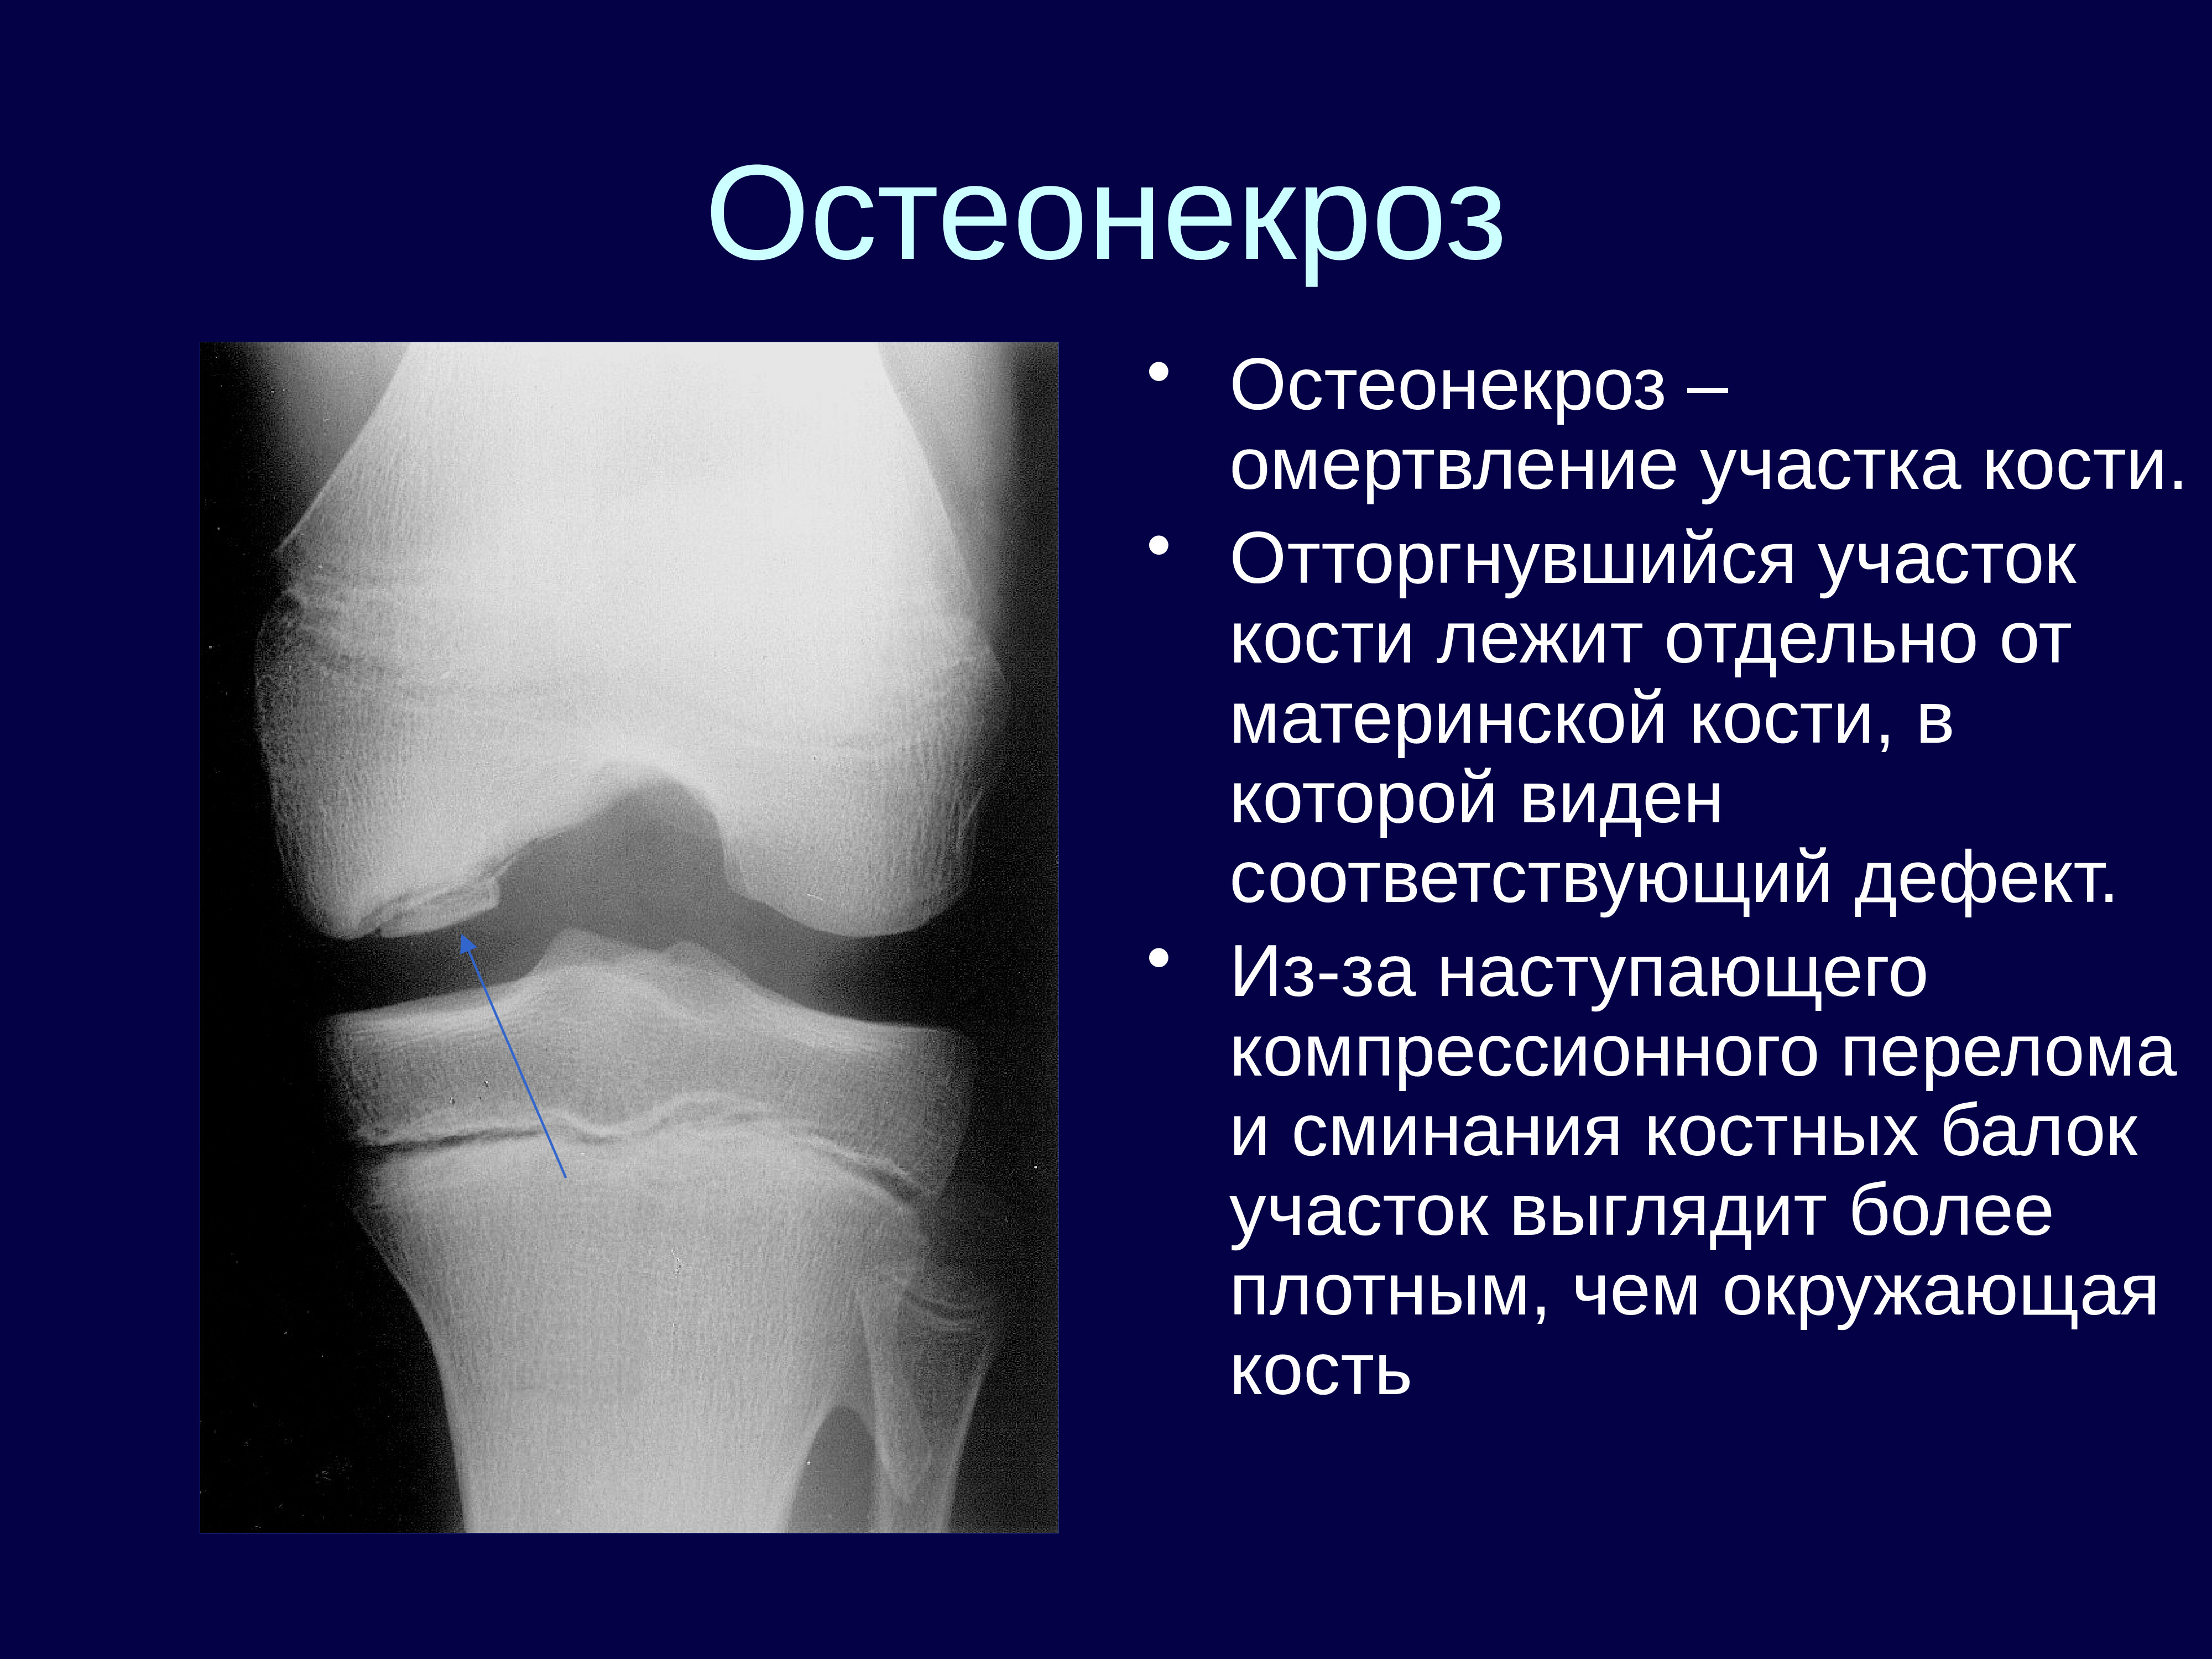 Асептический некроз мыщелков. Остеонекроз коленного сустава рентген. Асептический некроз коленного сустава рентген стадии. Субхондральный остеонекроз. Остеонекроз бедренной кости.